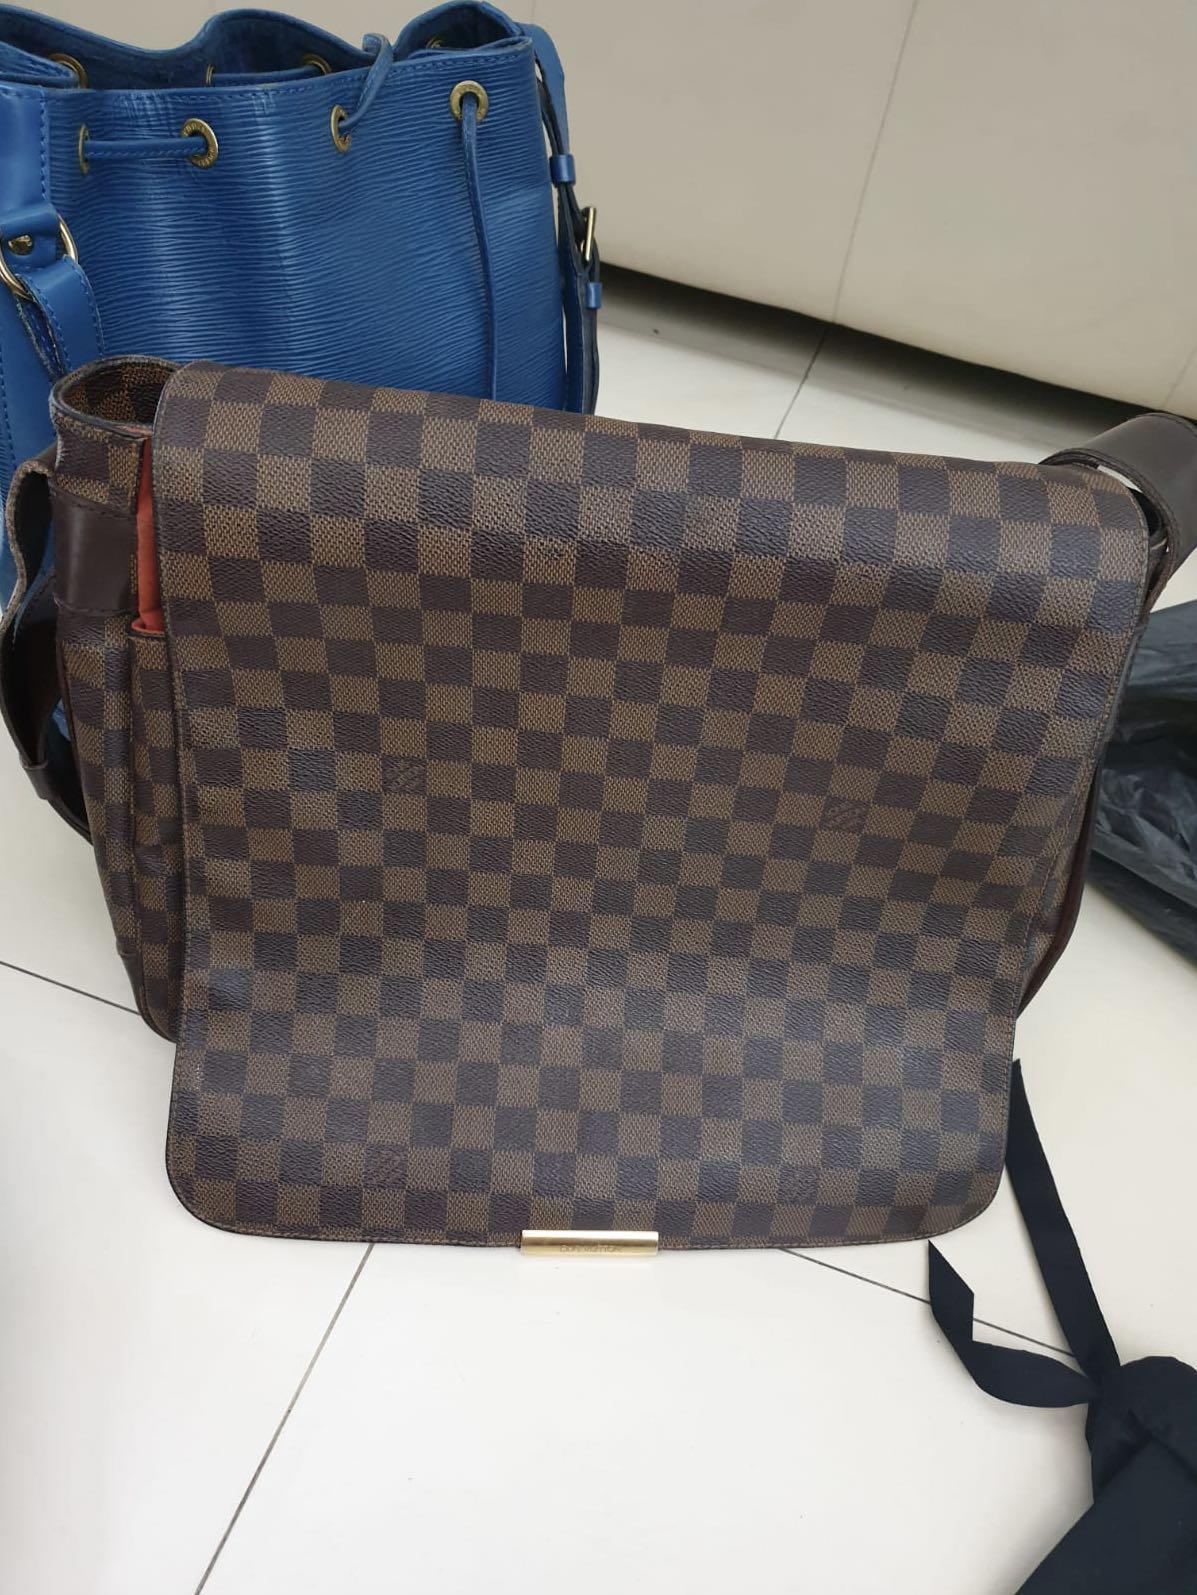 ✓Authentic Louis Vuitton Damier Ebene Bastille Messenger Bag